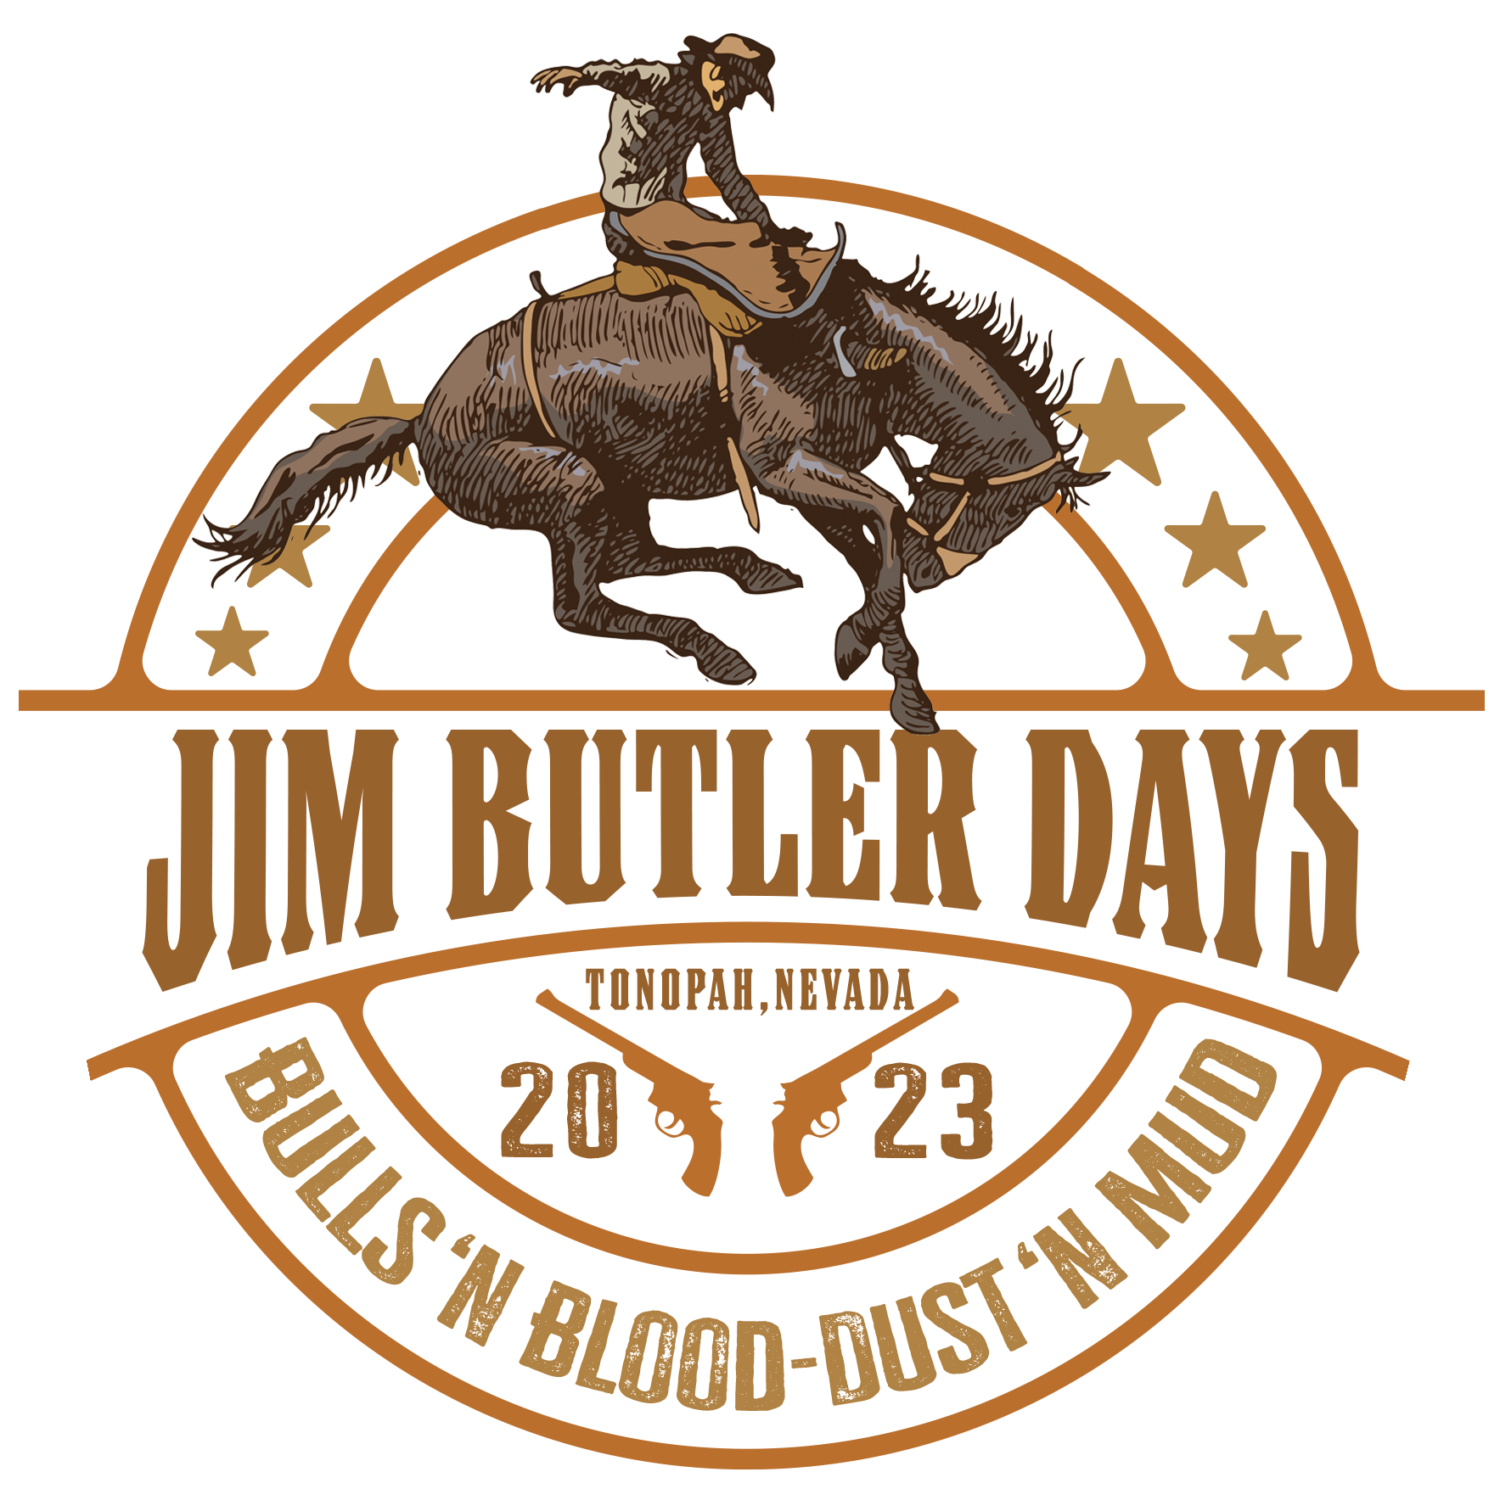 Jim Butler Days